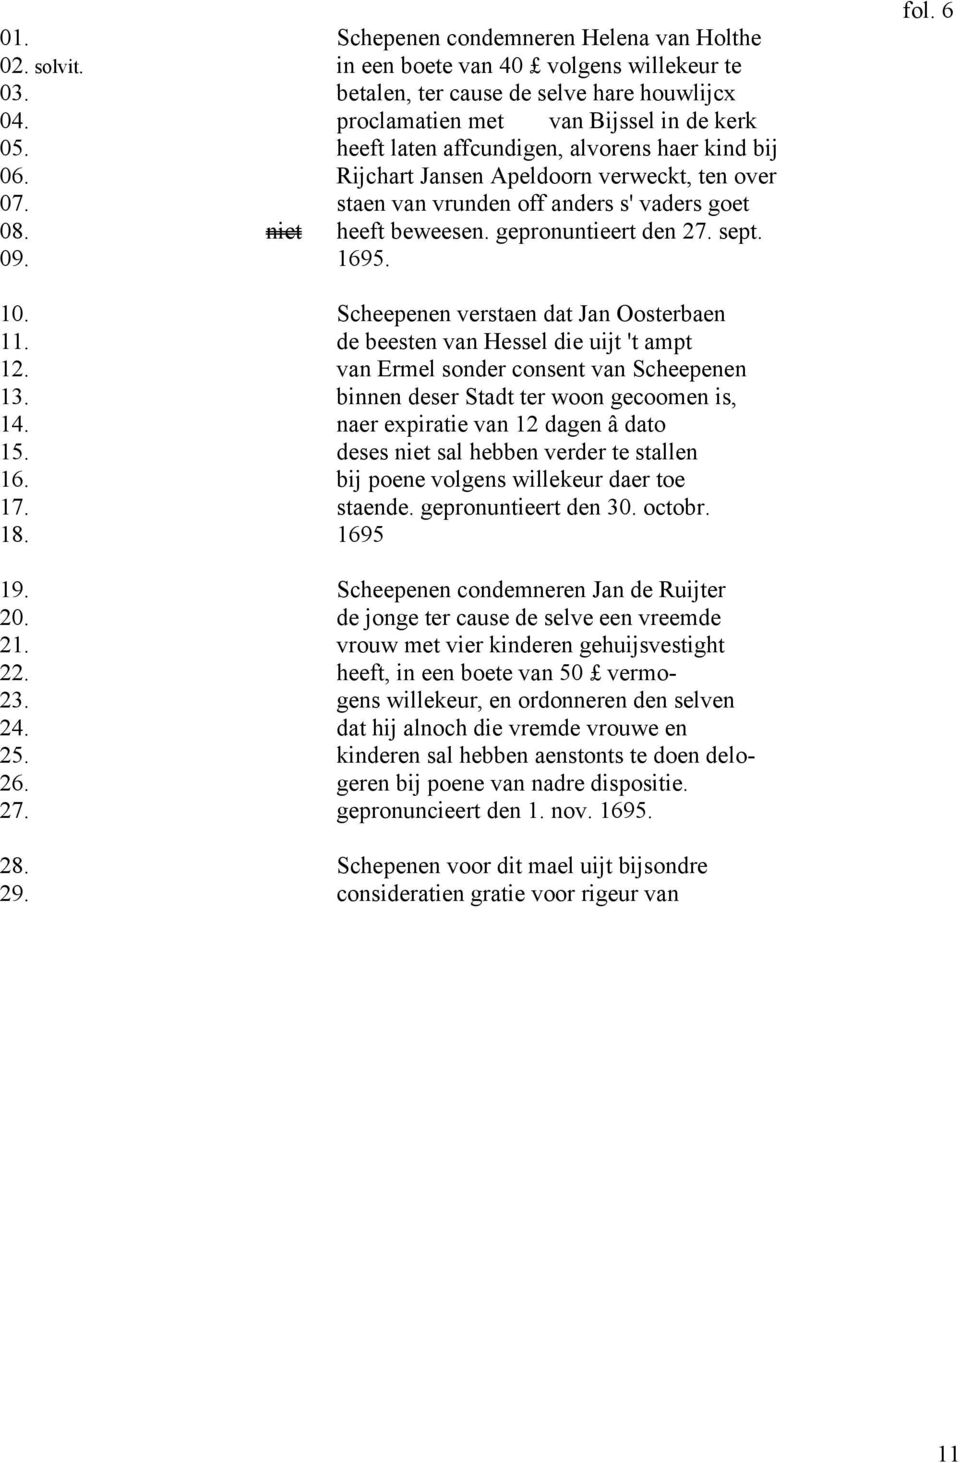 09. 1695. fol. 6 10. Scheepenen verstaen dat Jan Oosterbaen 11. de beesten van Hessel die uijt 't ampt 12. van Ermel sonder consent van Scheepenen 13. binnen deser Stadt ter woon gecoomen is, 14.